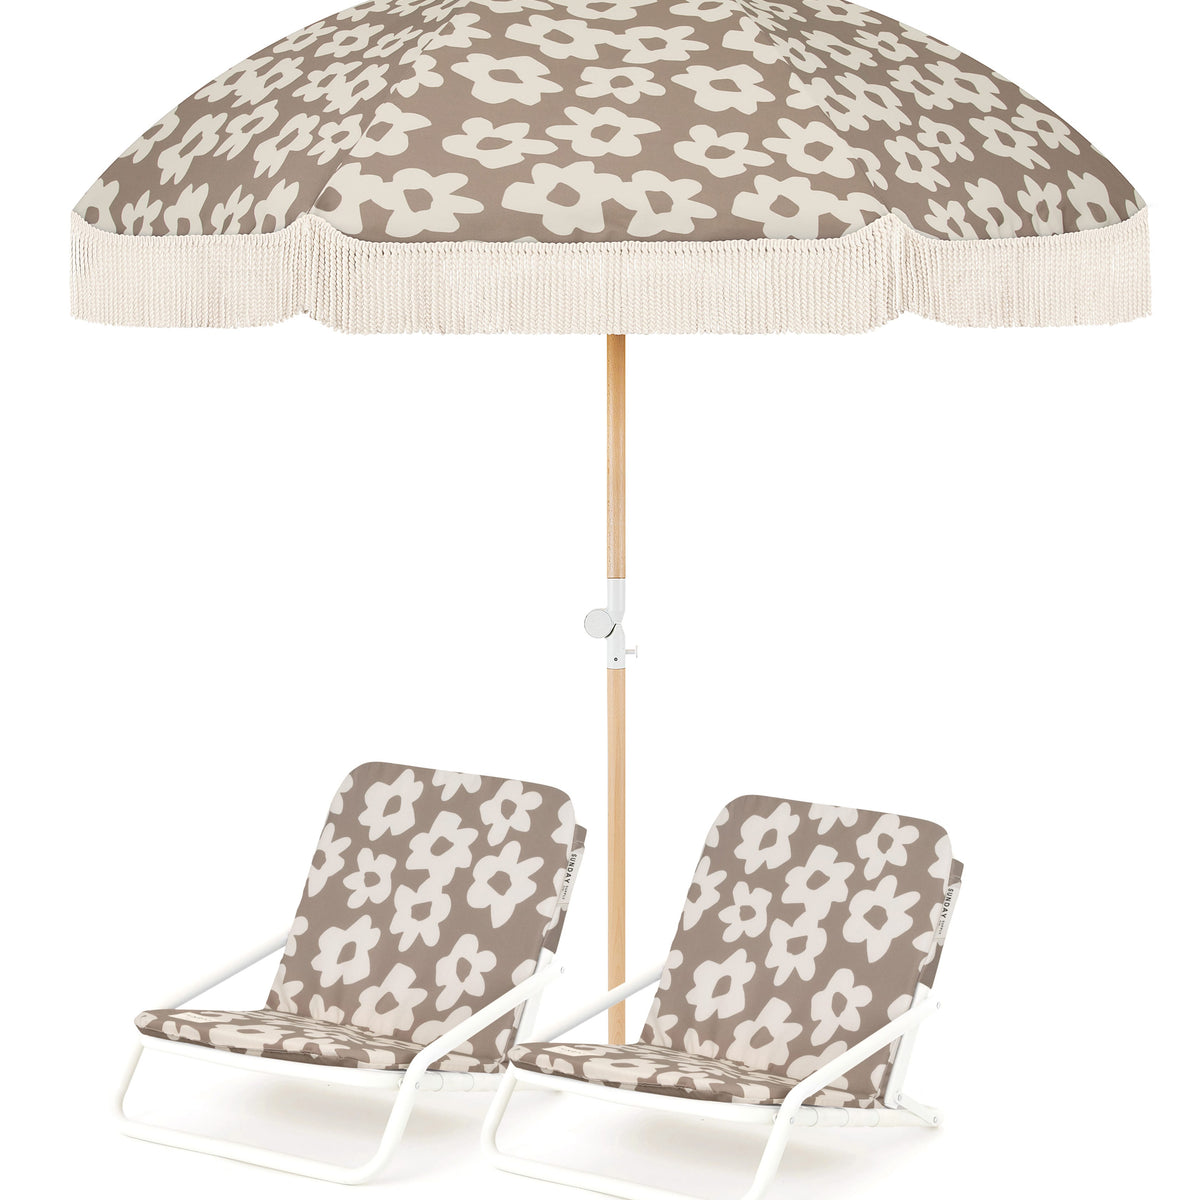 Husk Flower Beach Umbrella & Beach Chair Set